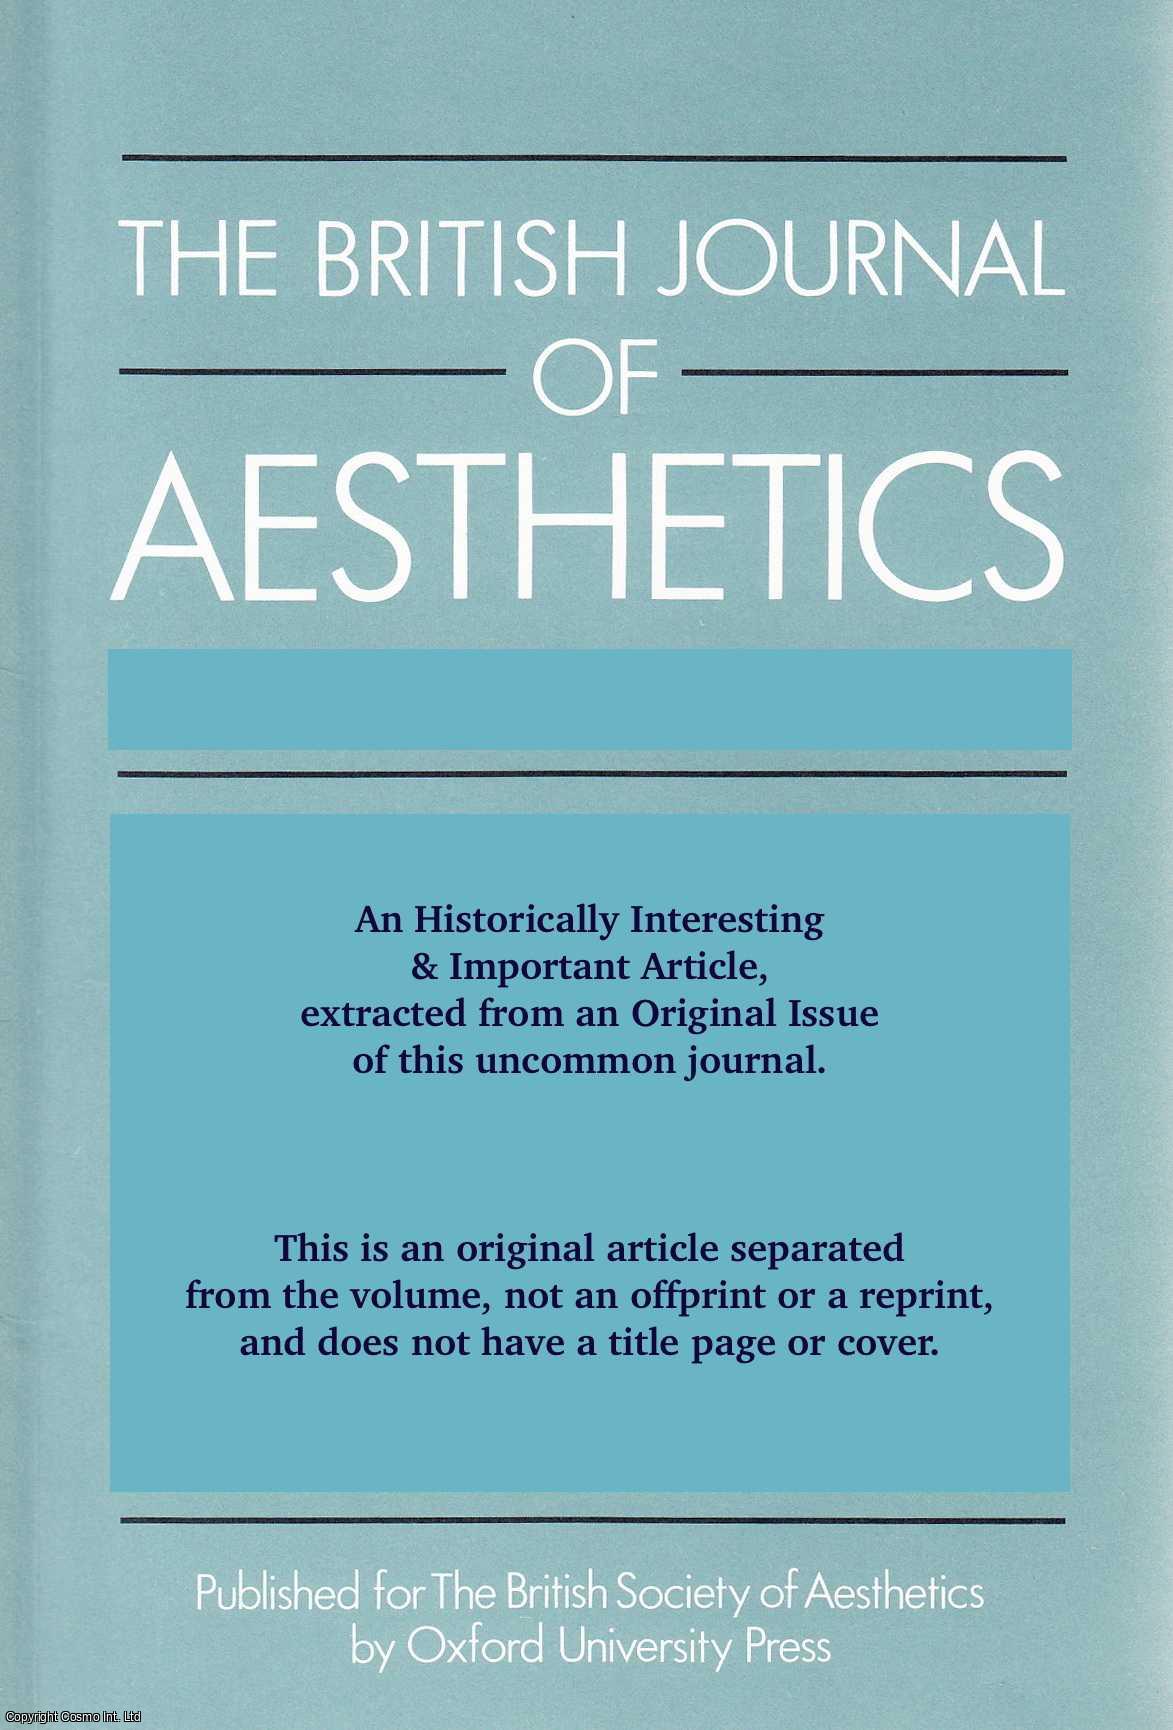 Steve Baker - Frank Kermode and Art Criticism. An original article from the British Journal of Aesthetics, 1981.